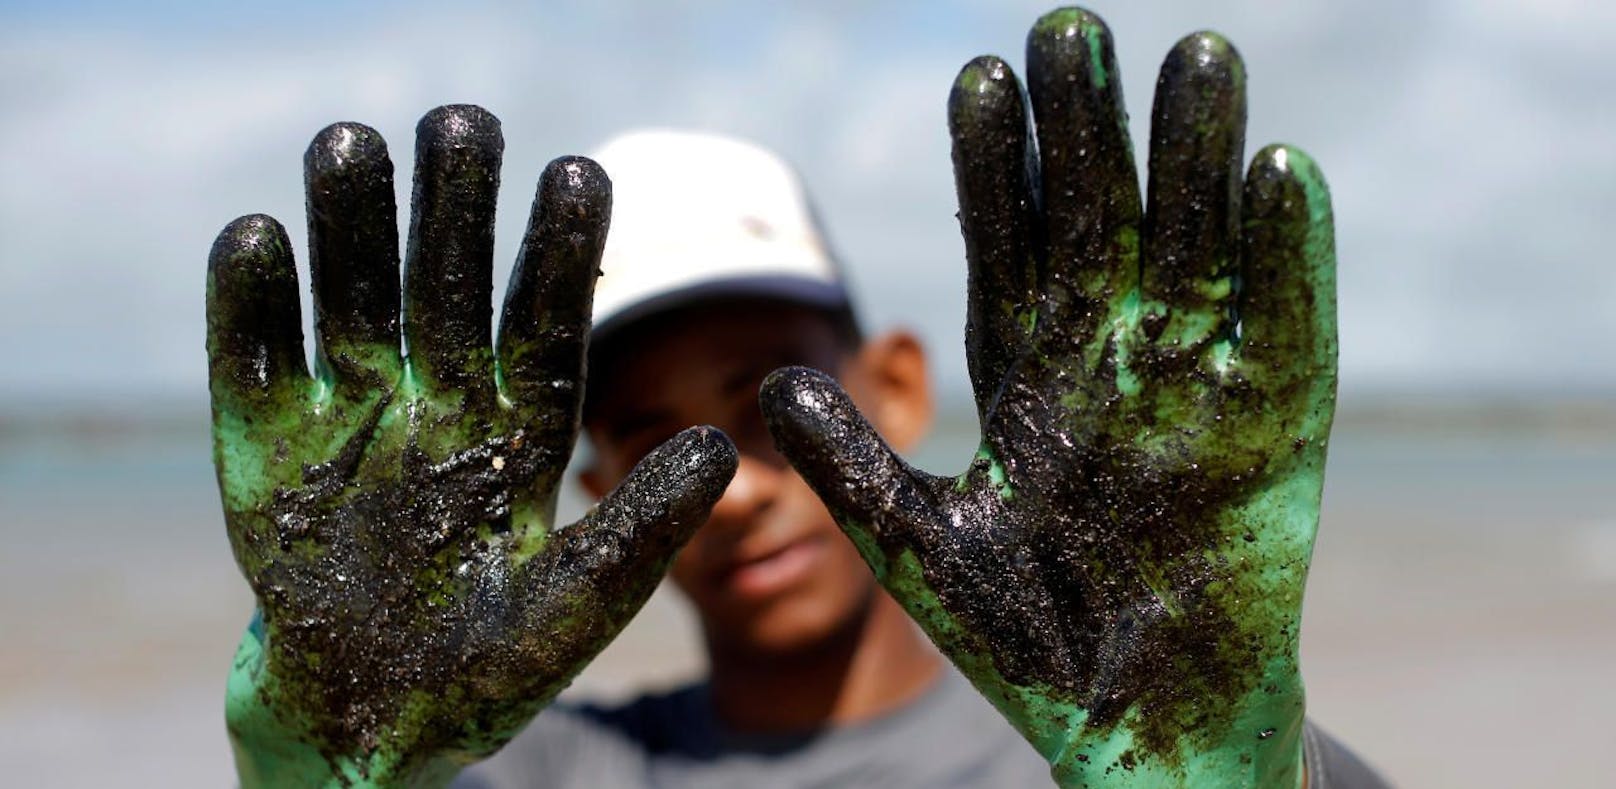 Ölpest in Brasilien: "Das Schlimmste steht noch bevor"